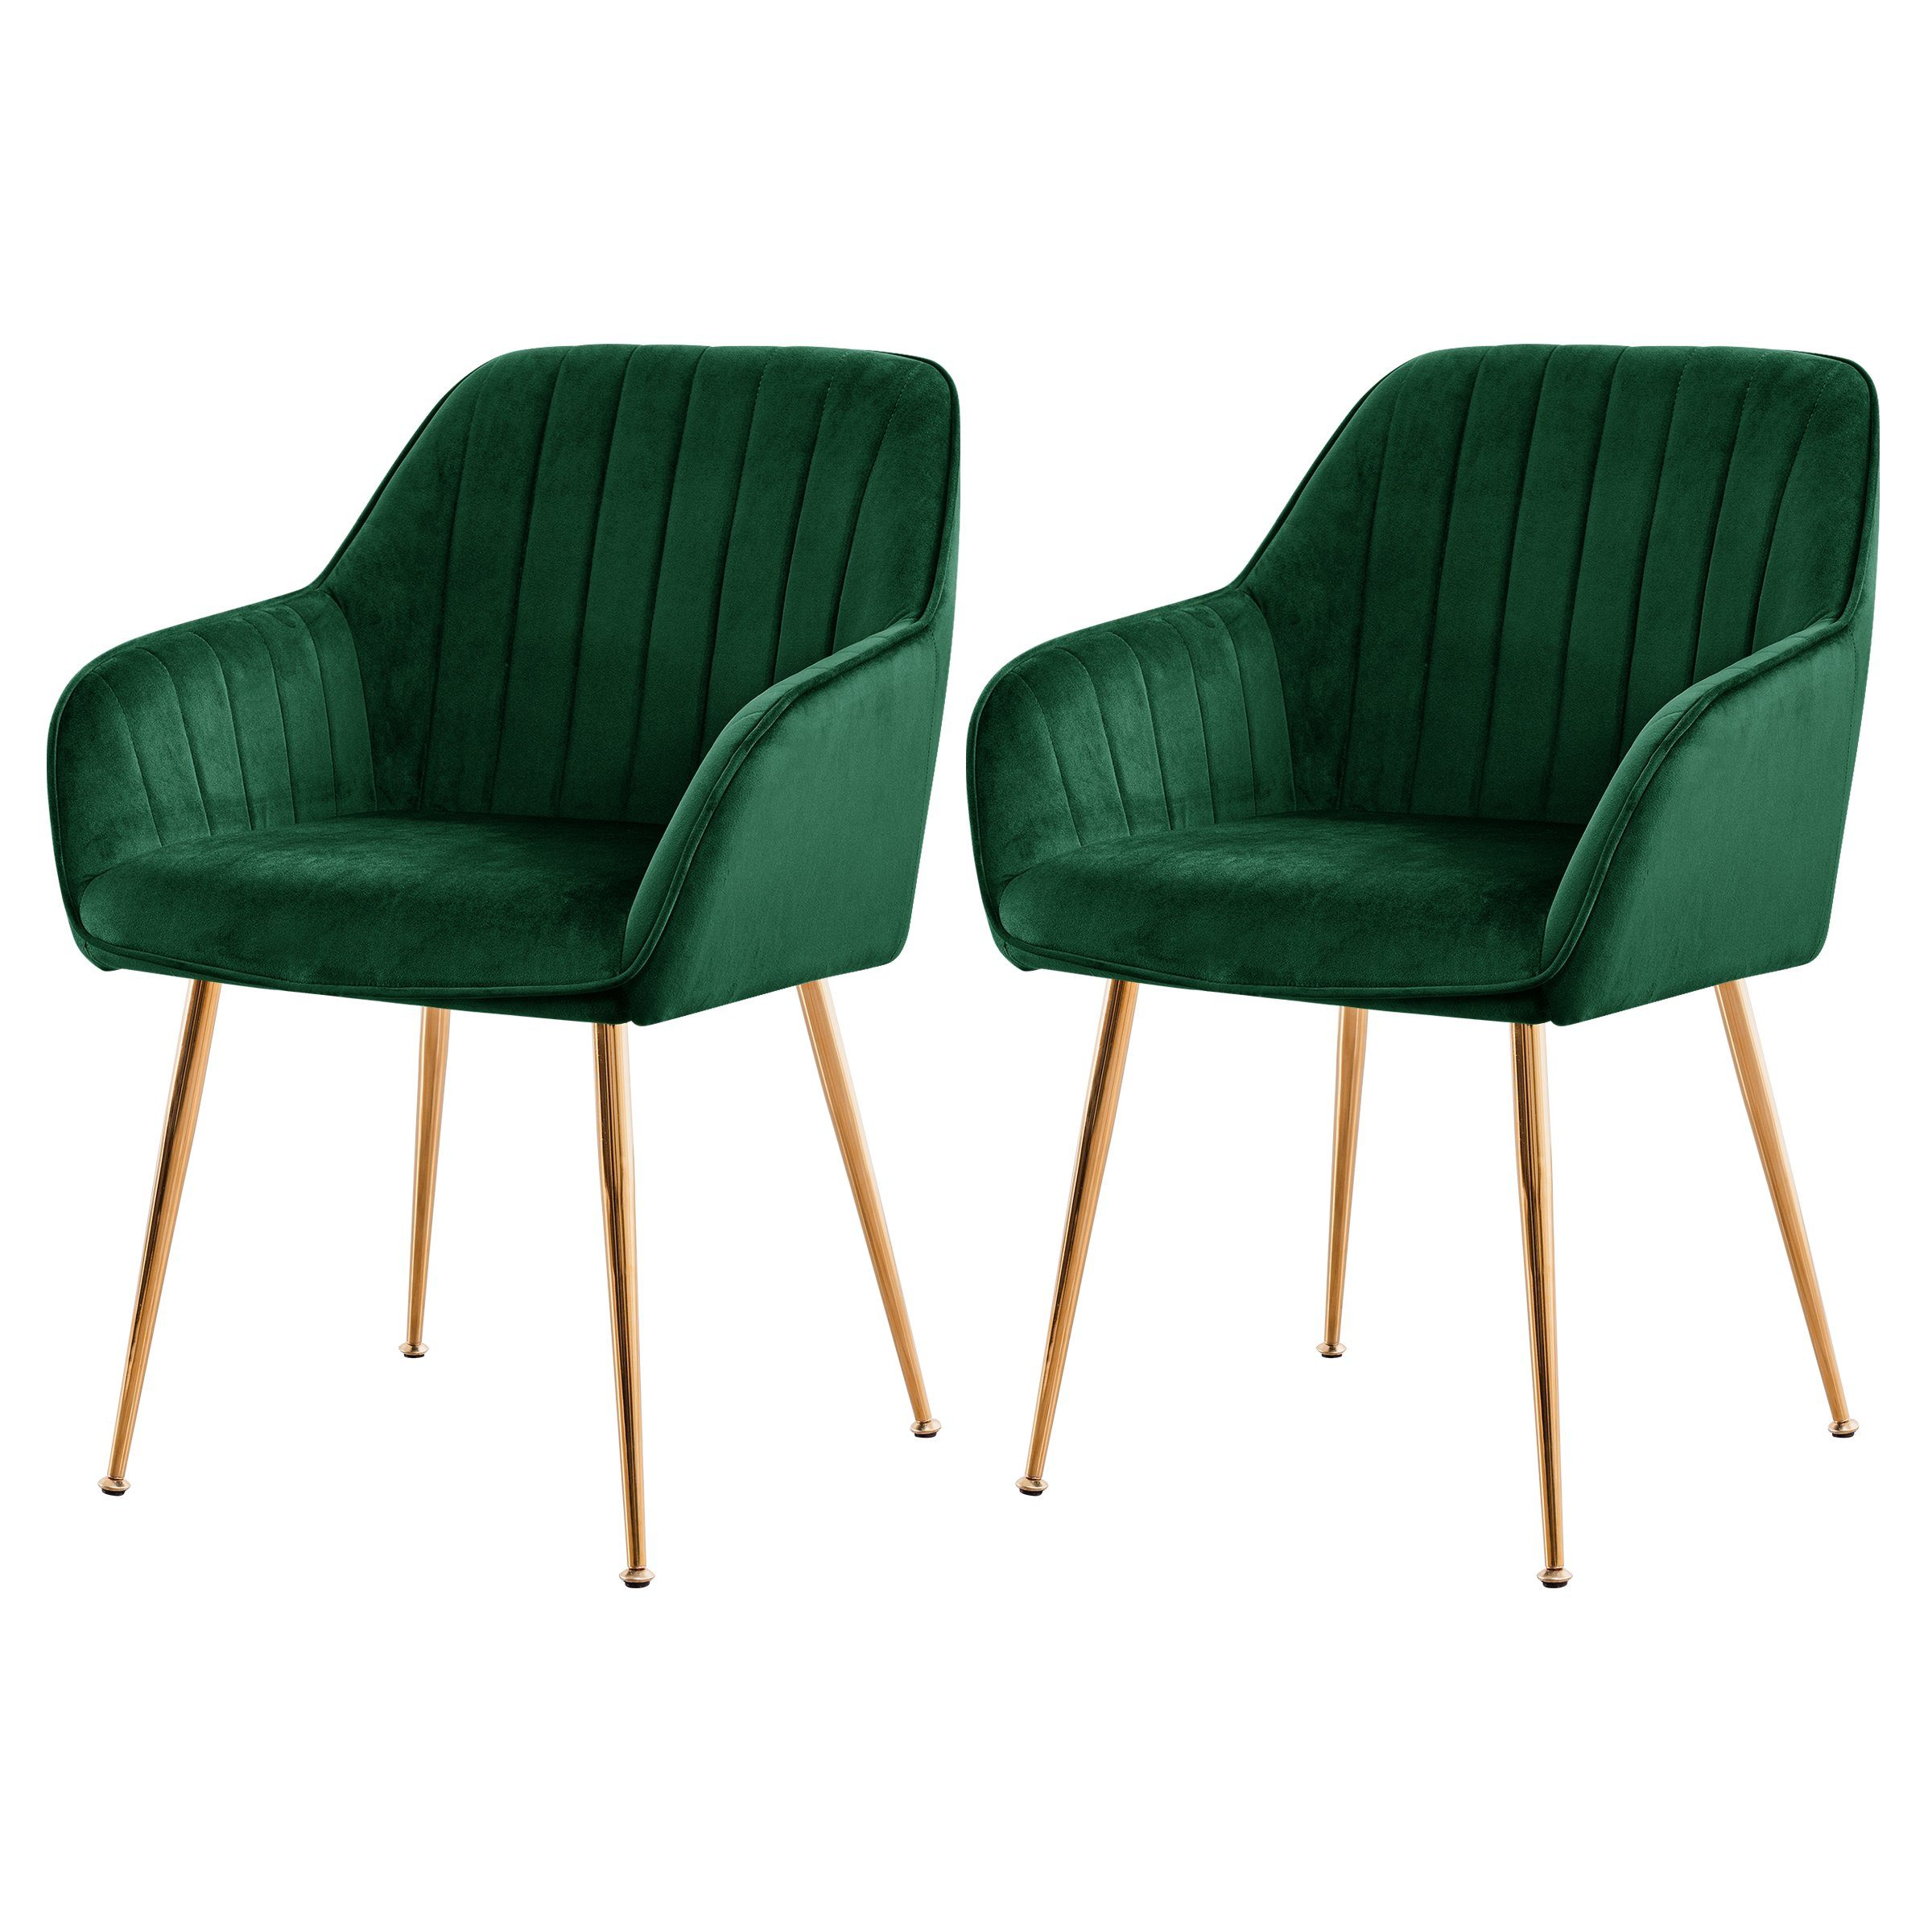 SUBRTEX Esszimmerstuhl Sessel mit Rückenlehne, 2er Set, Schwammpolster, Ständer aus Metall Grün | Stühle